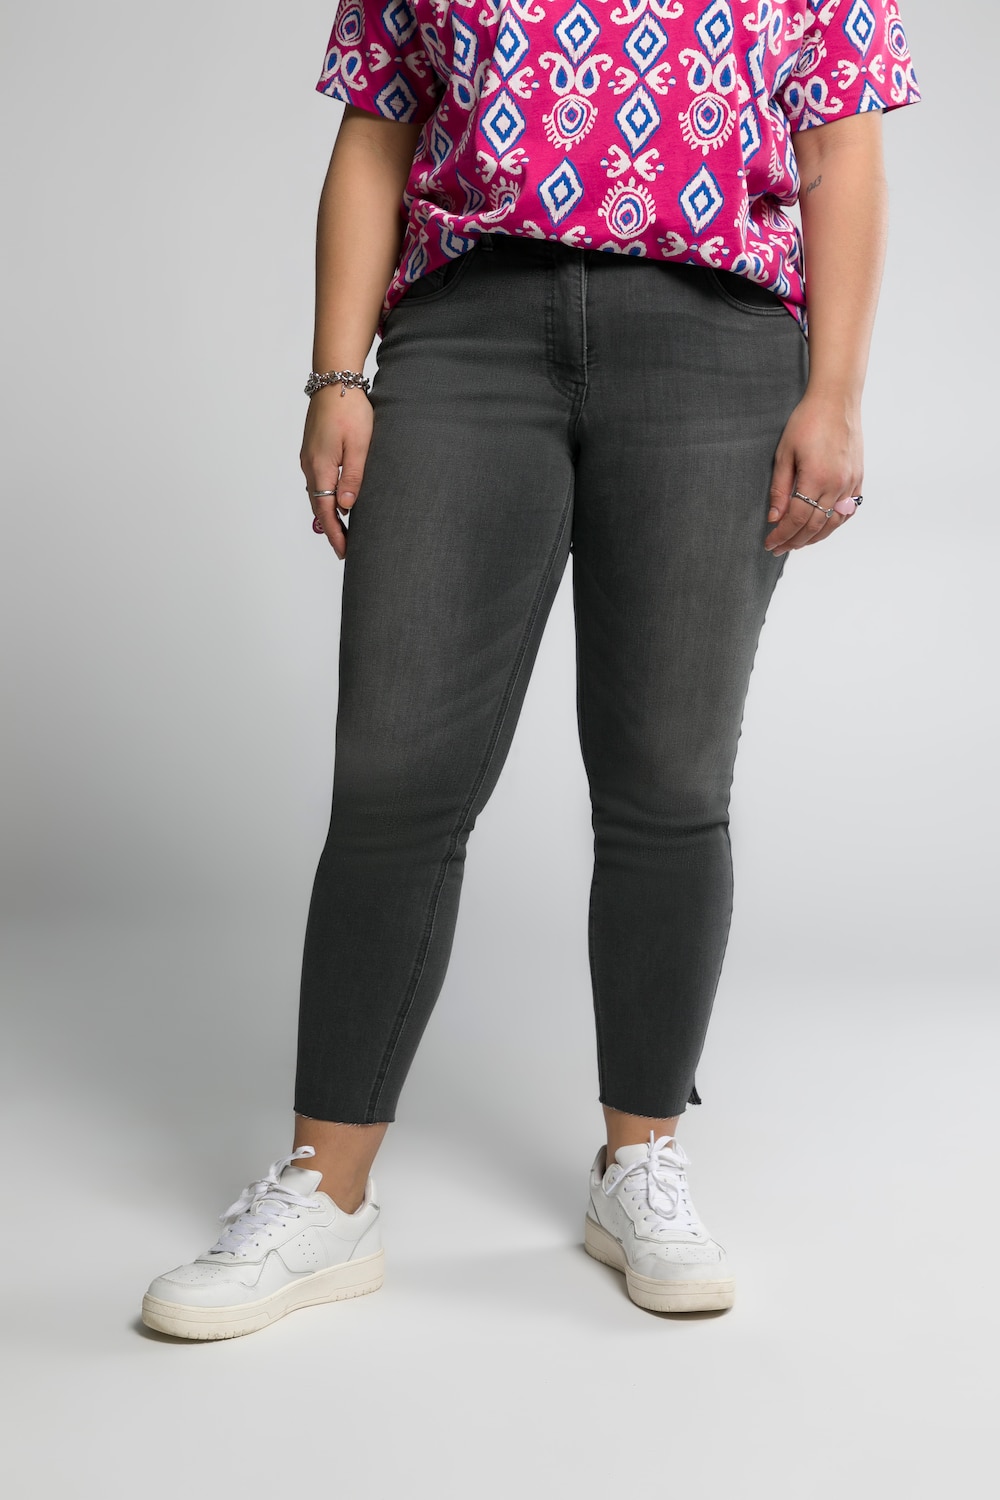 Grote Maten skinny jeans, Dames, grijs, Maat: 46, Katoen/Polyester, Studio Untold